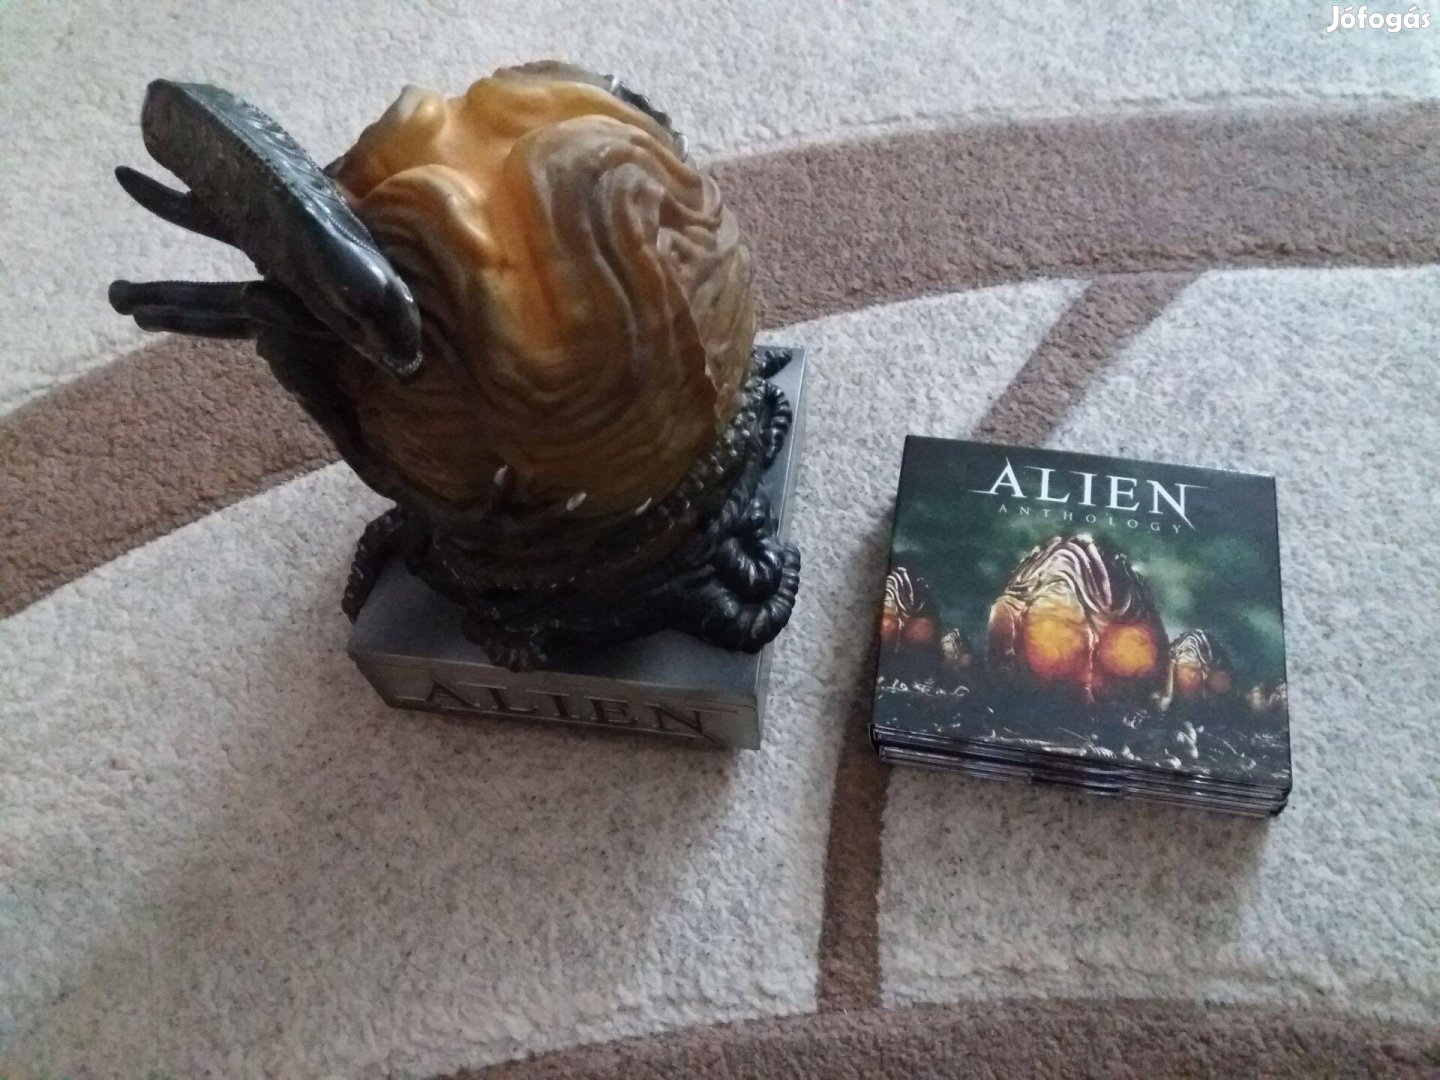 Alien antológia - Limitált tojás-szobros változat (6 BD)